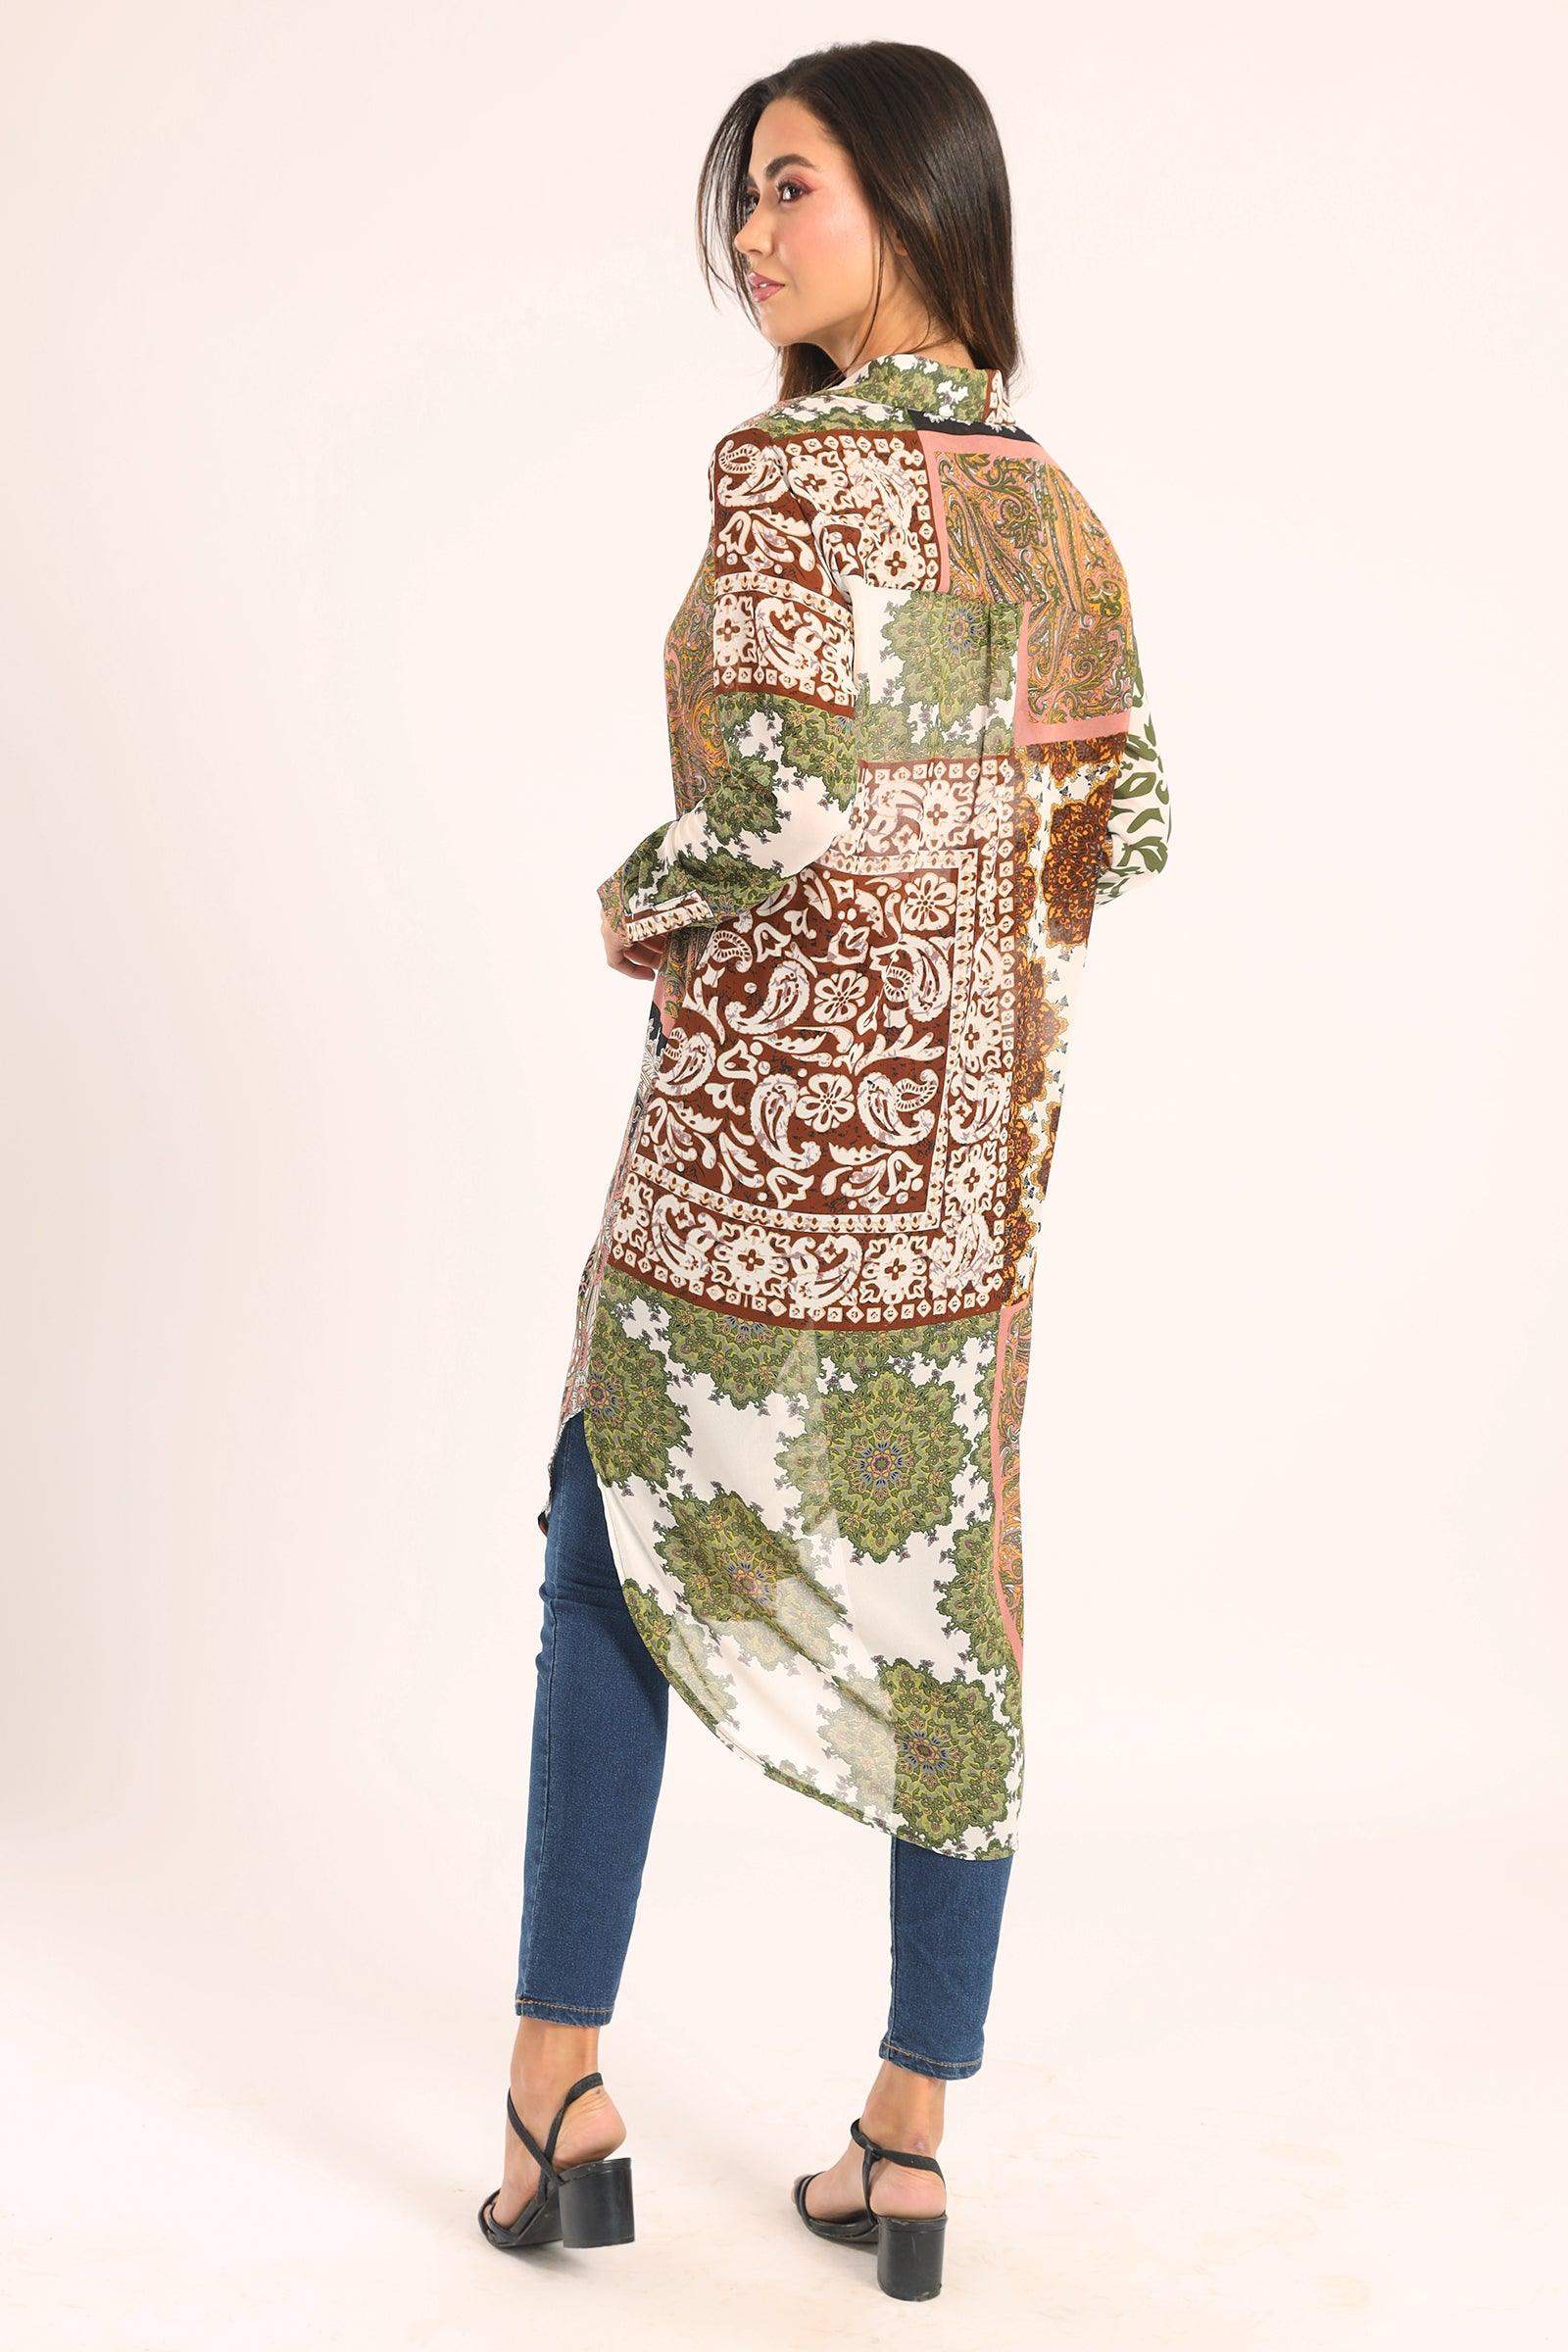 Colored Chiffon Long Shirt - Carina - كارينا